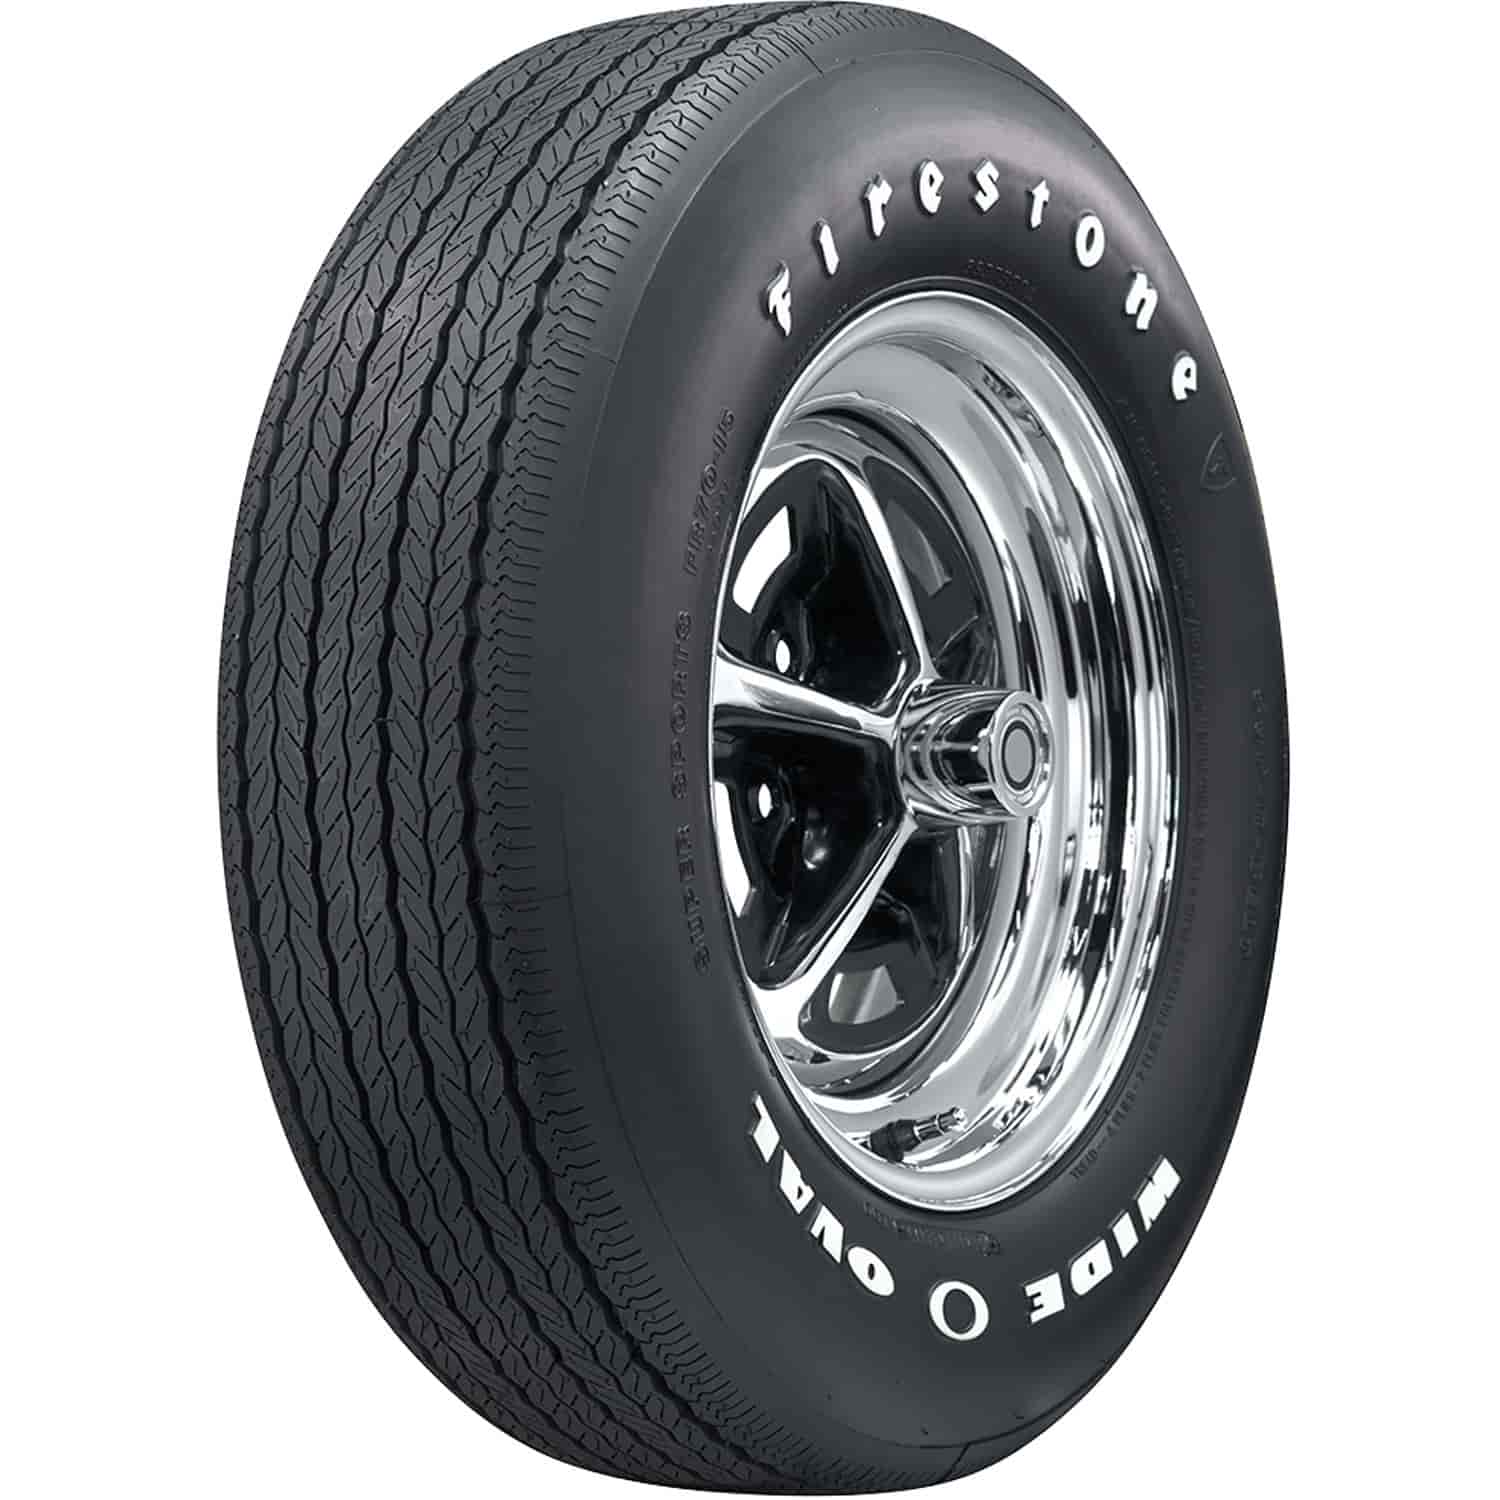 Firestone Wide Oval Radial Tire FR70-14